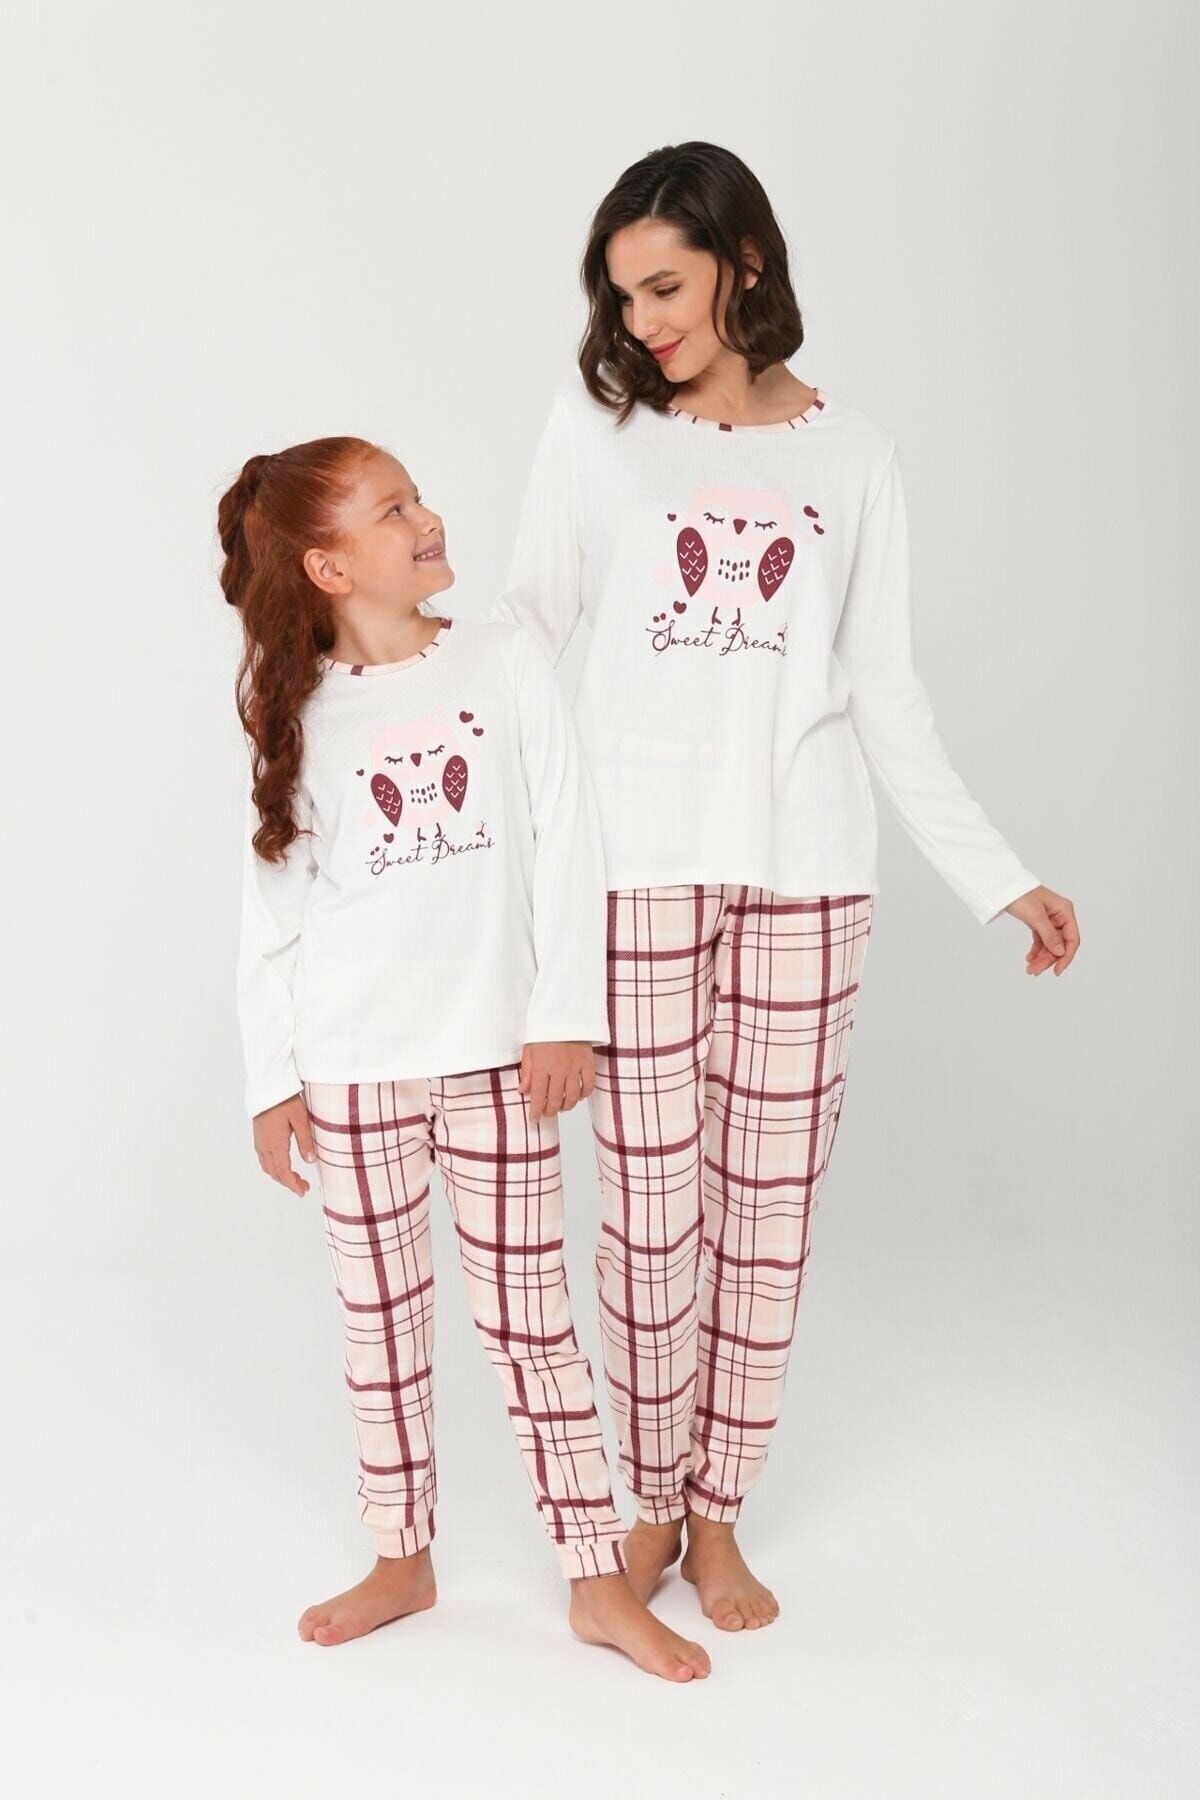 LILIAN Sweet Owl Pijama Takımı - Anne Ve Kız Ayrı Ayrı Satılır, Fiyatları Farklıdır!!!